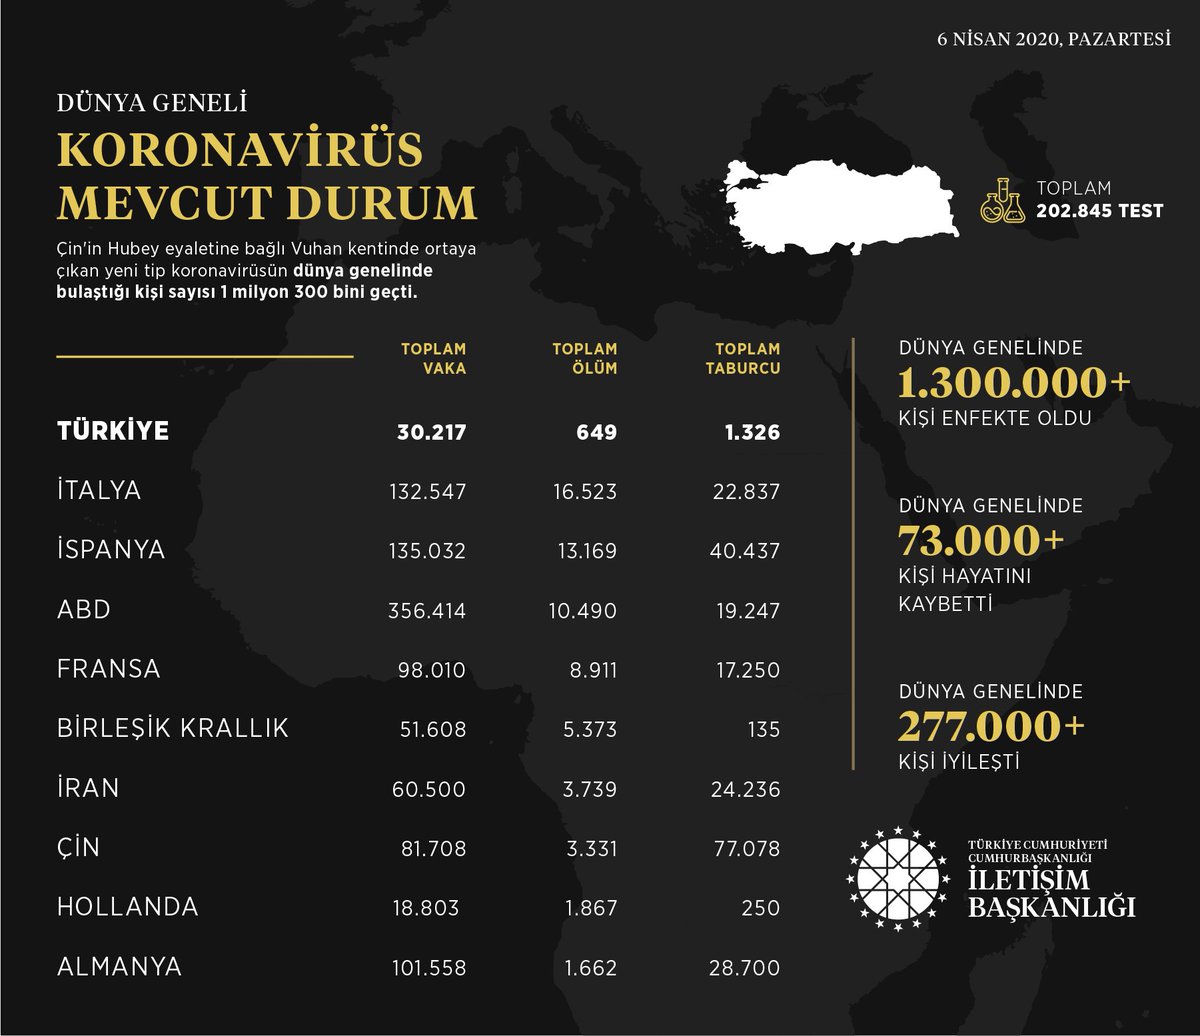 06 Nisan 2020, saat 21:45 itibarıyla Türkiye ve dünya genelinde yeni tip Koronavirüs ile ilgili mevcut durum: Türkiye’de şu ana kadar toplam 202.845 test yapılmış olup, 30.217 Koronavirüs vakası tespit edilmiş, 649 vatandaşımız hayatını kaybetmiş, 1.326 hasta iyileşmiştir.